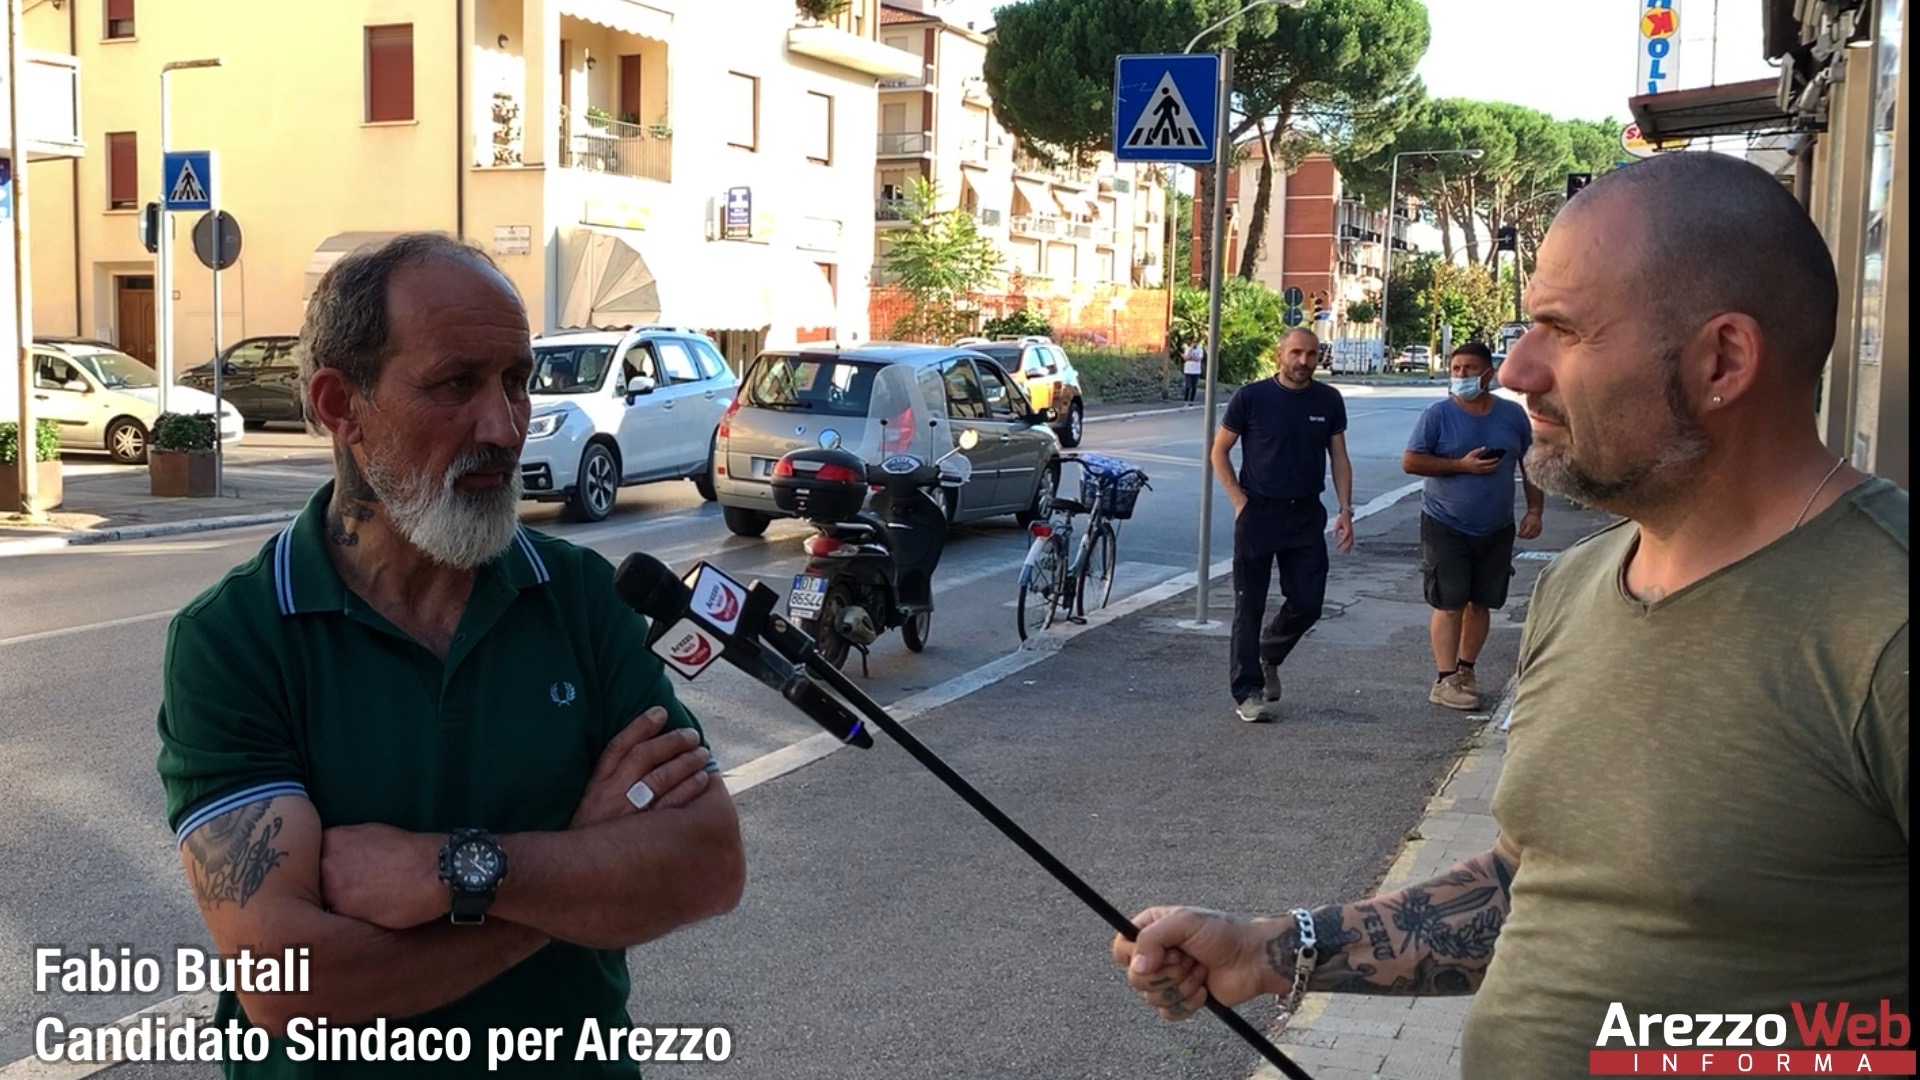 Intervista a Fabio Butali che presenta la sua candidatura a sindaco per Arezzo